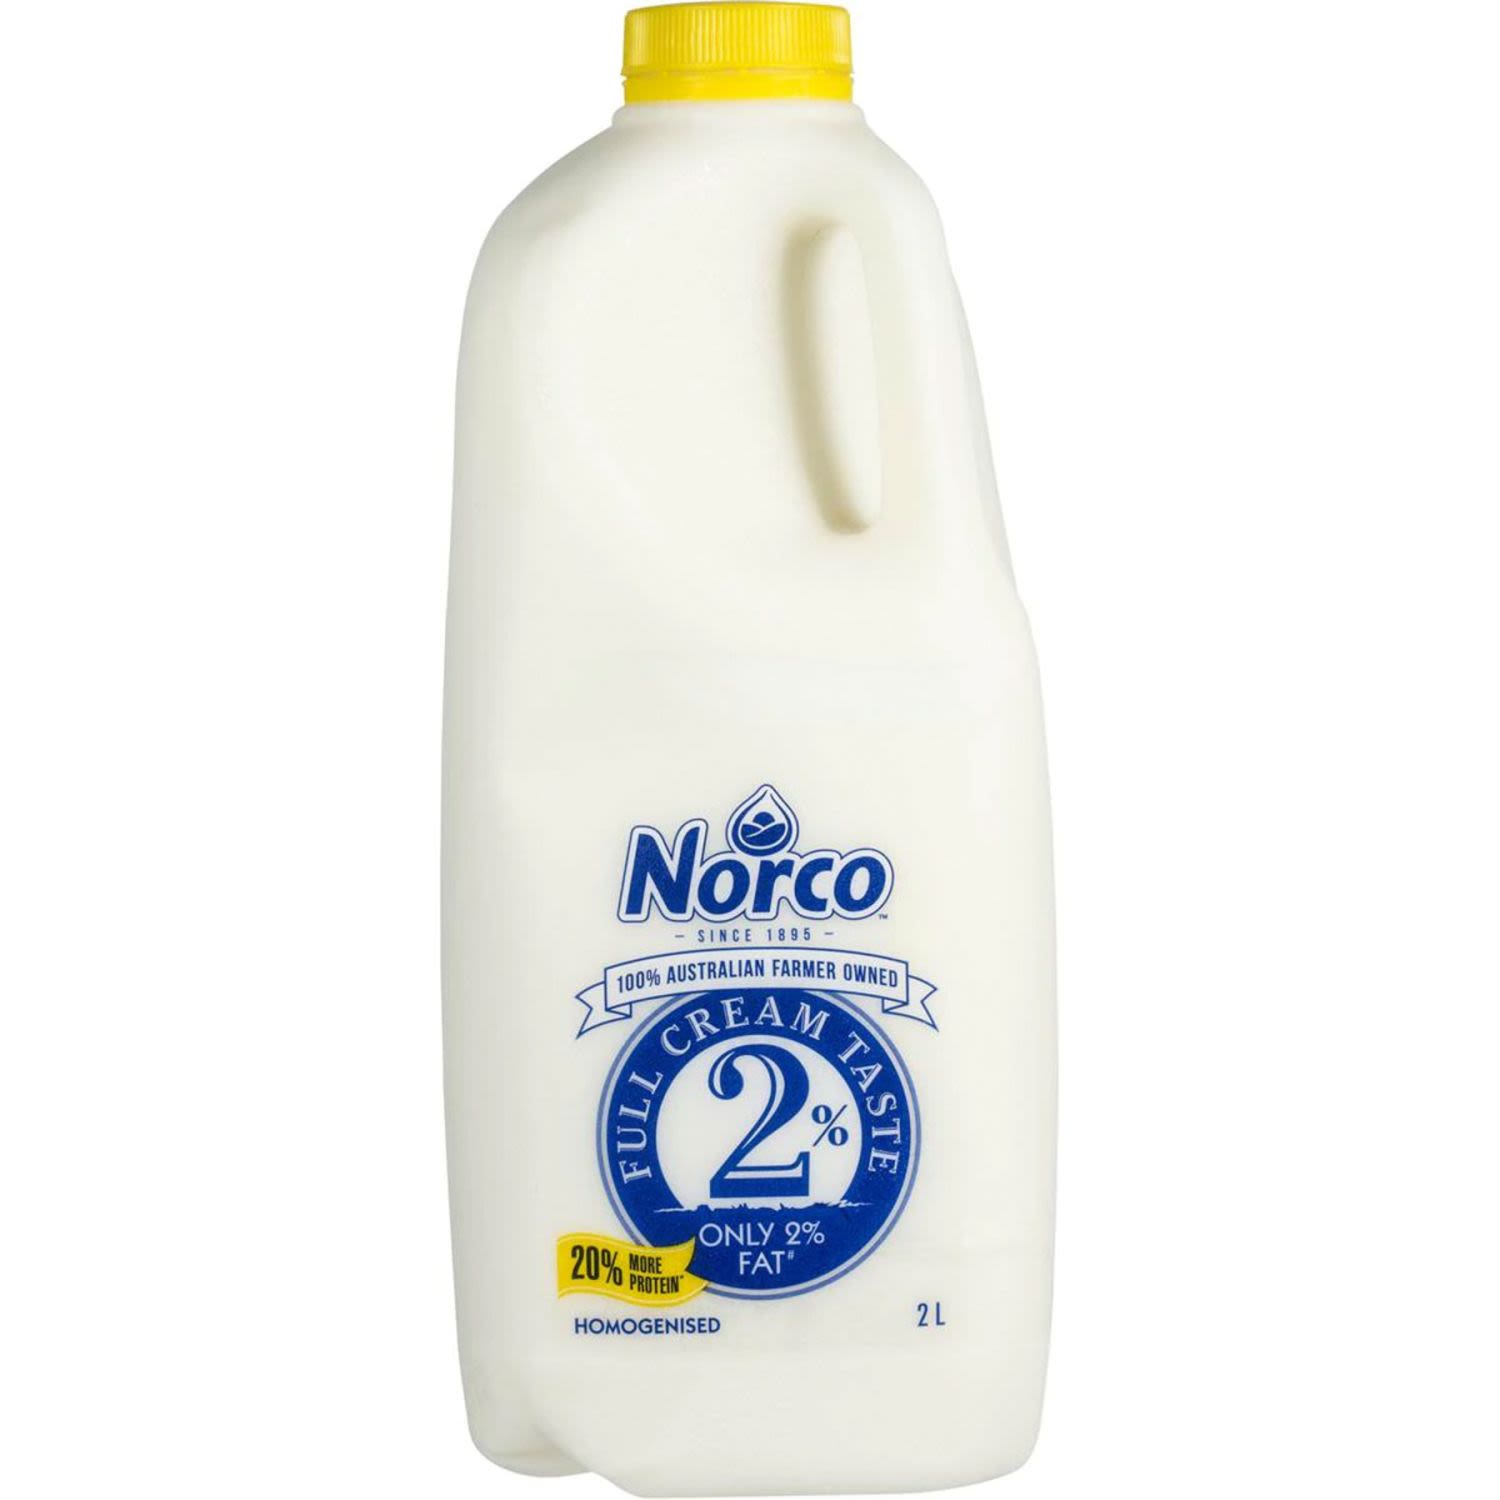 Norco Milk Full Cream Taste Only 2% Fat, 2 Litre